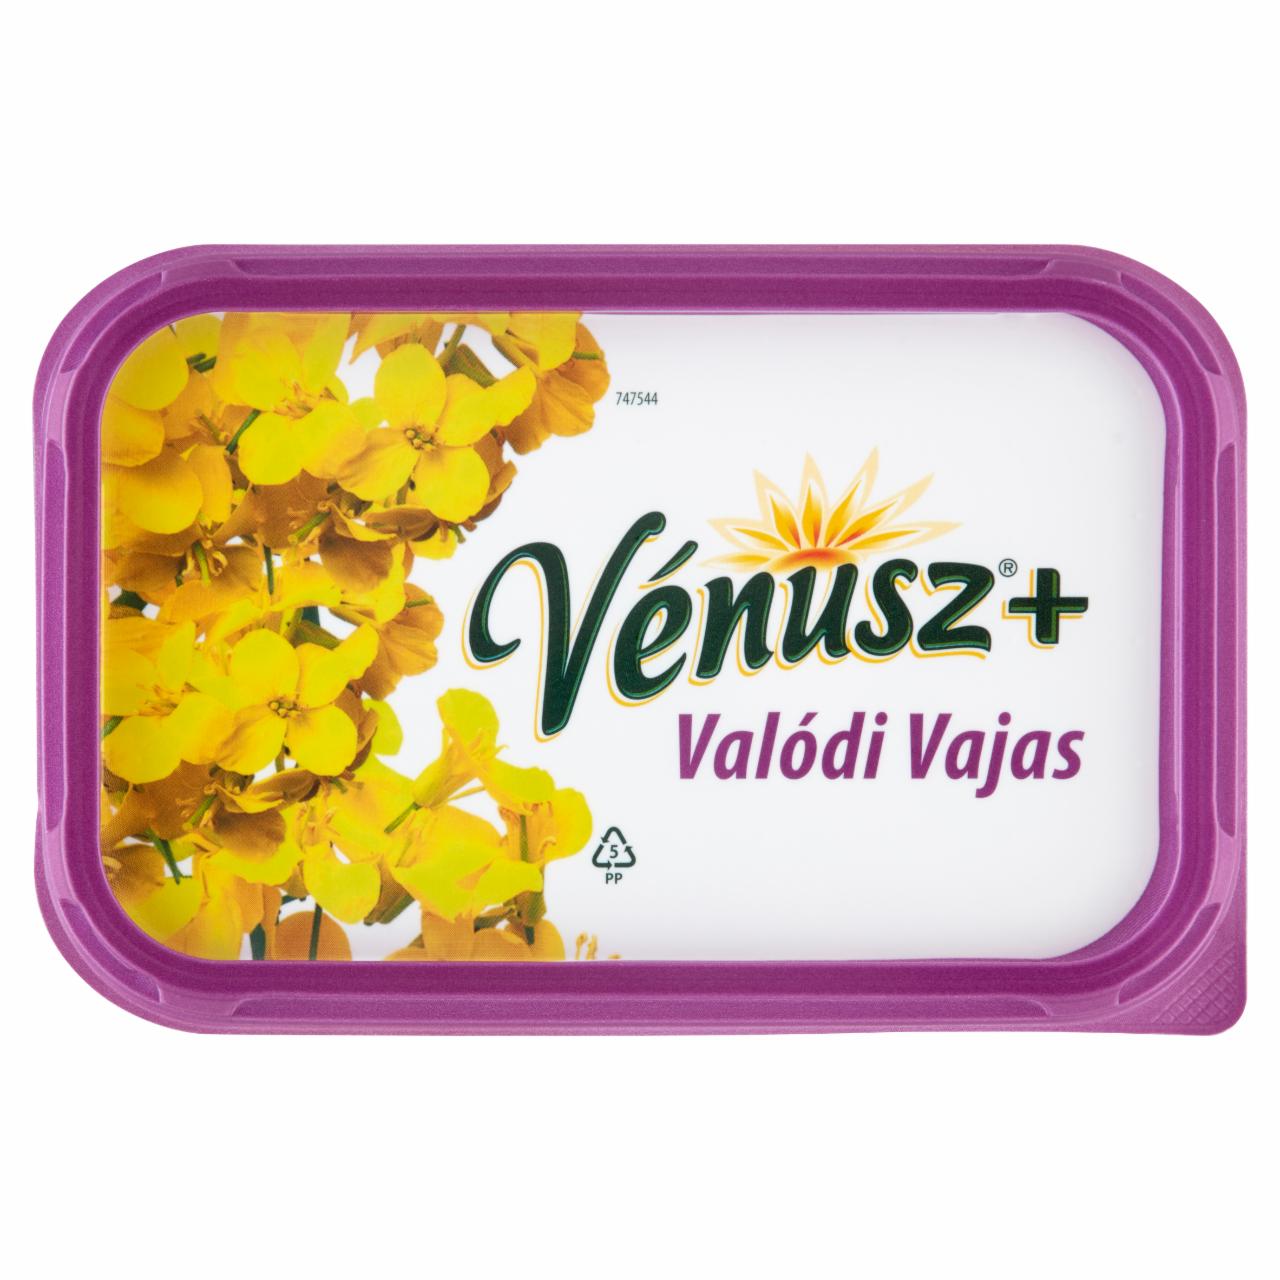 Képek - Vénusz+ Valódi Vajas 60% zsírtartalmú margarin 450 g